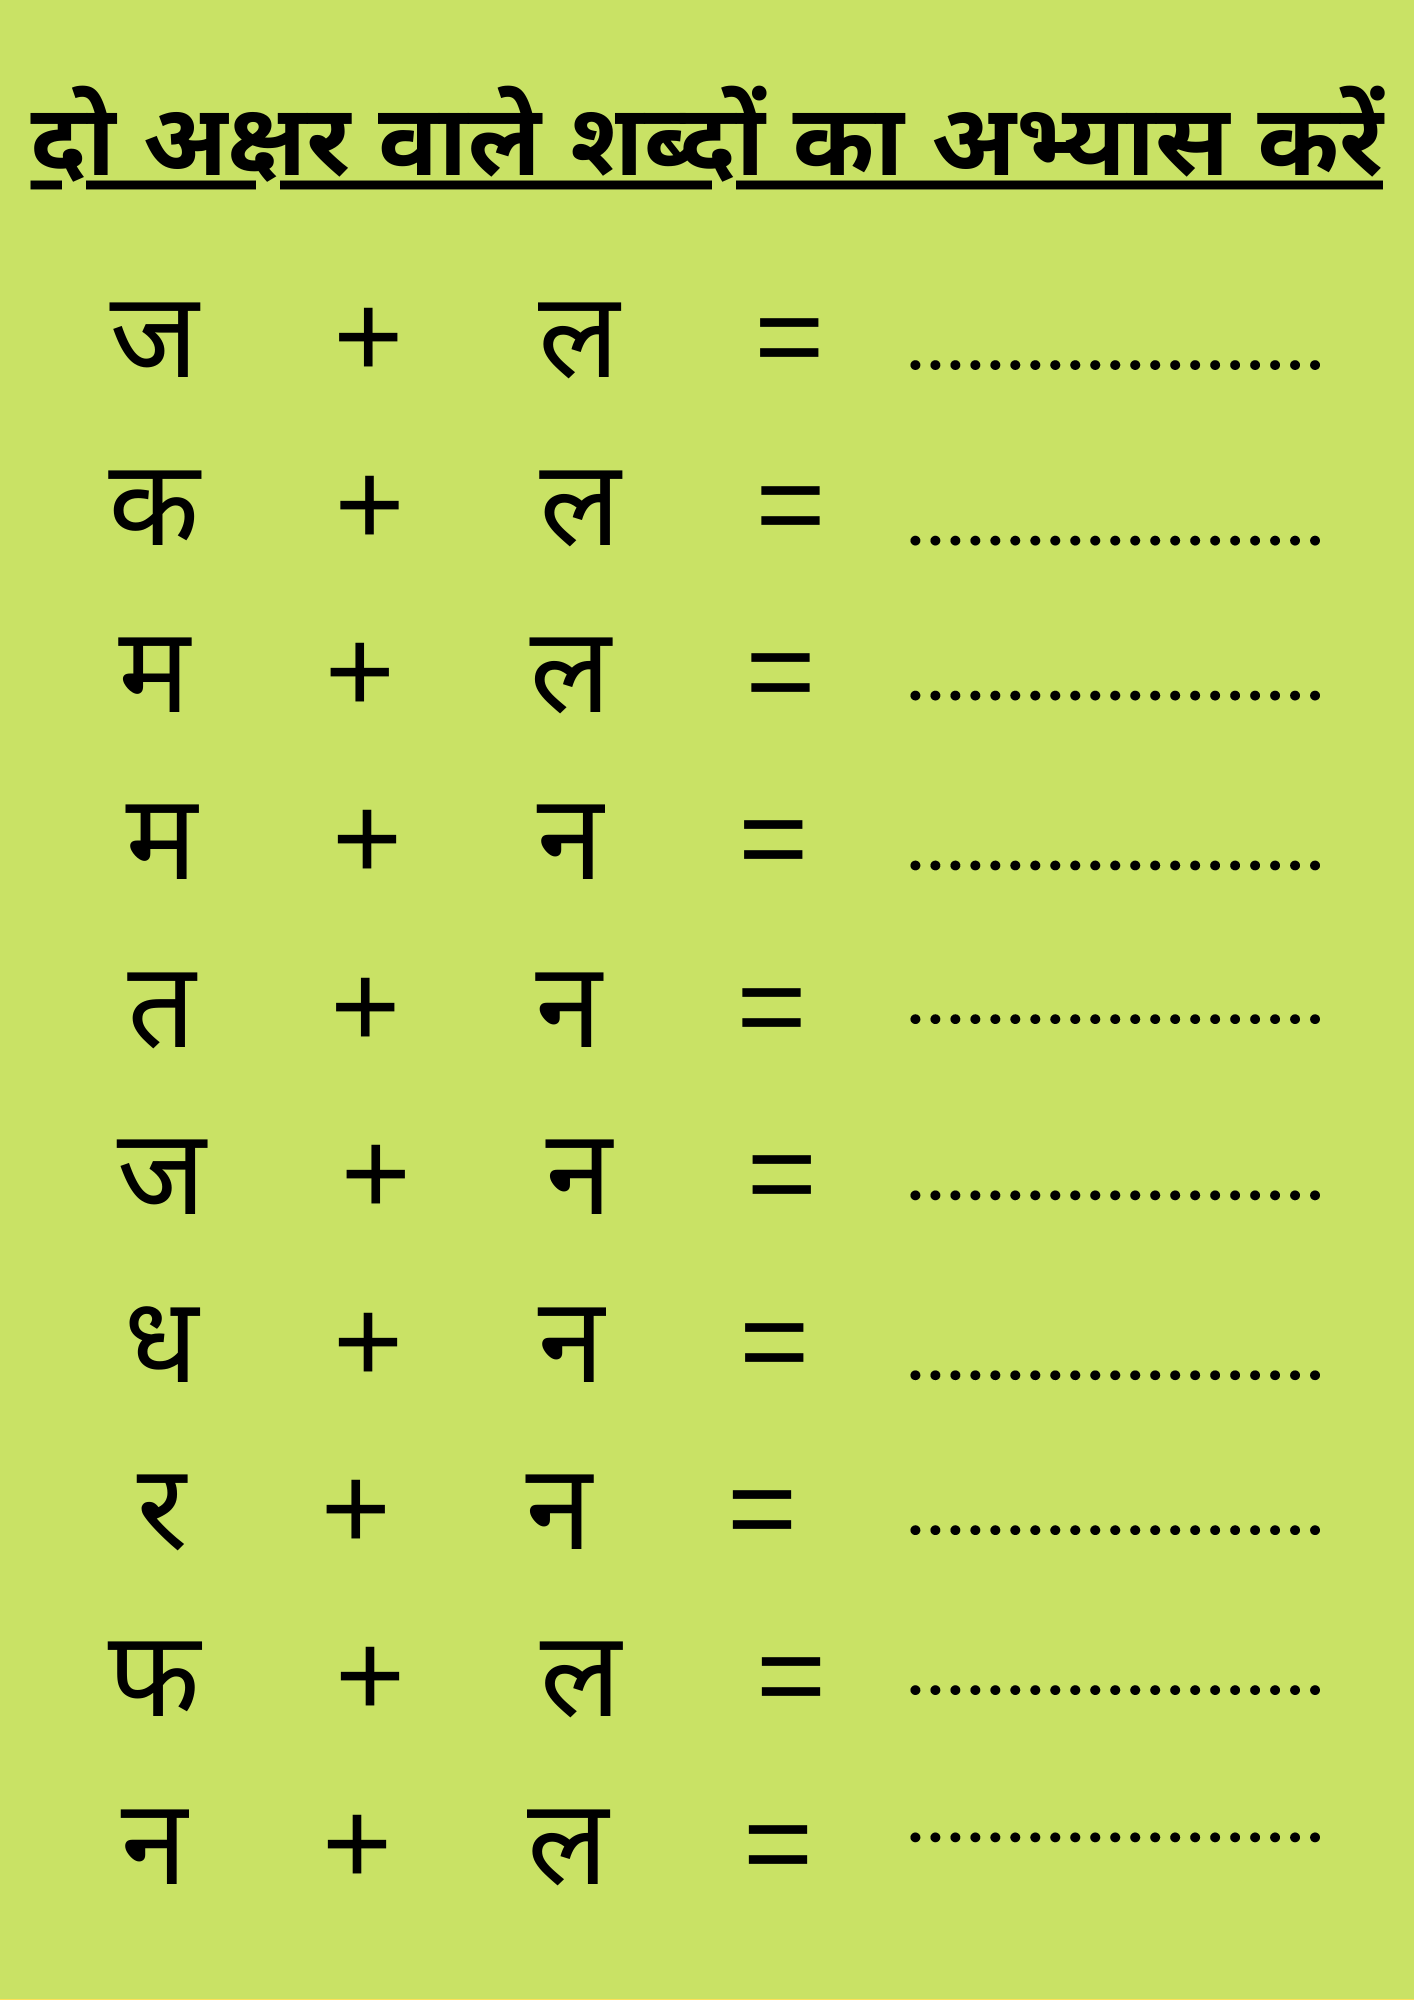 दो अक्षर वाले शब्दों का अभ्यास करें | Do Akshar Wale Sabd | Hindi Worksheet